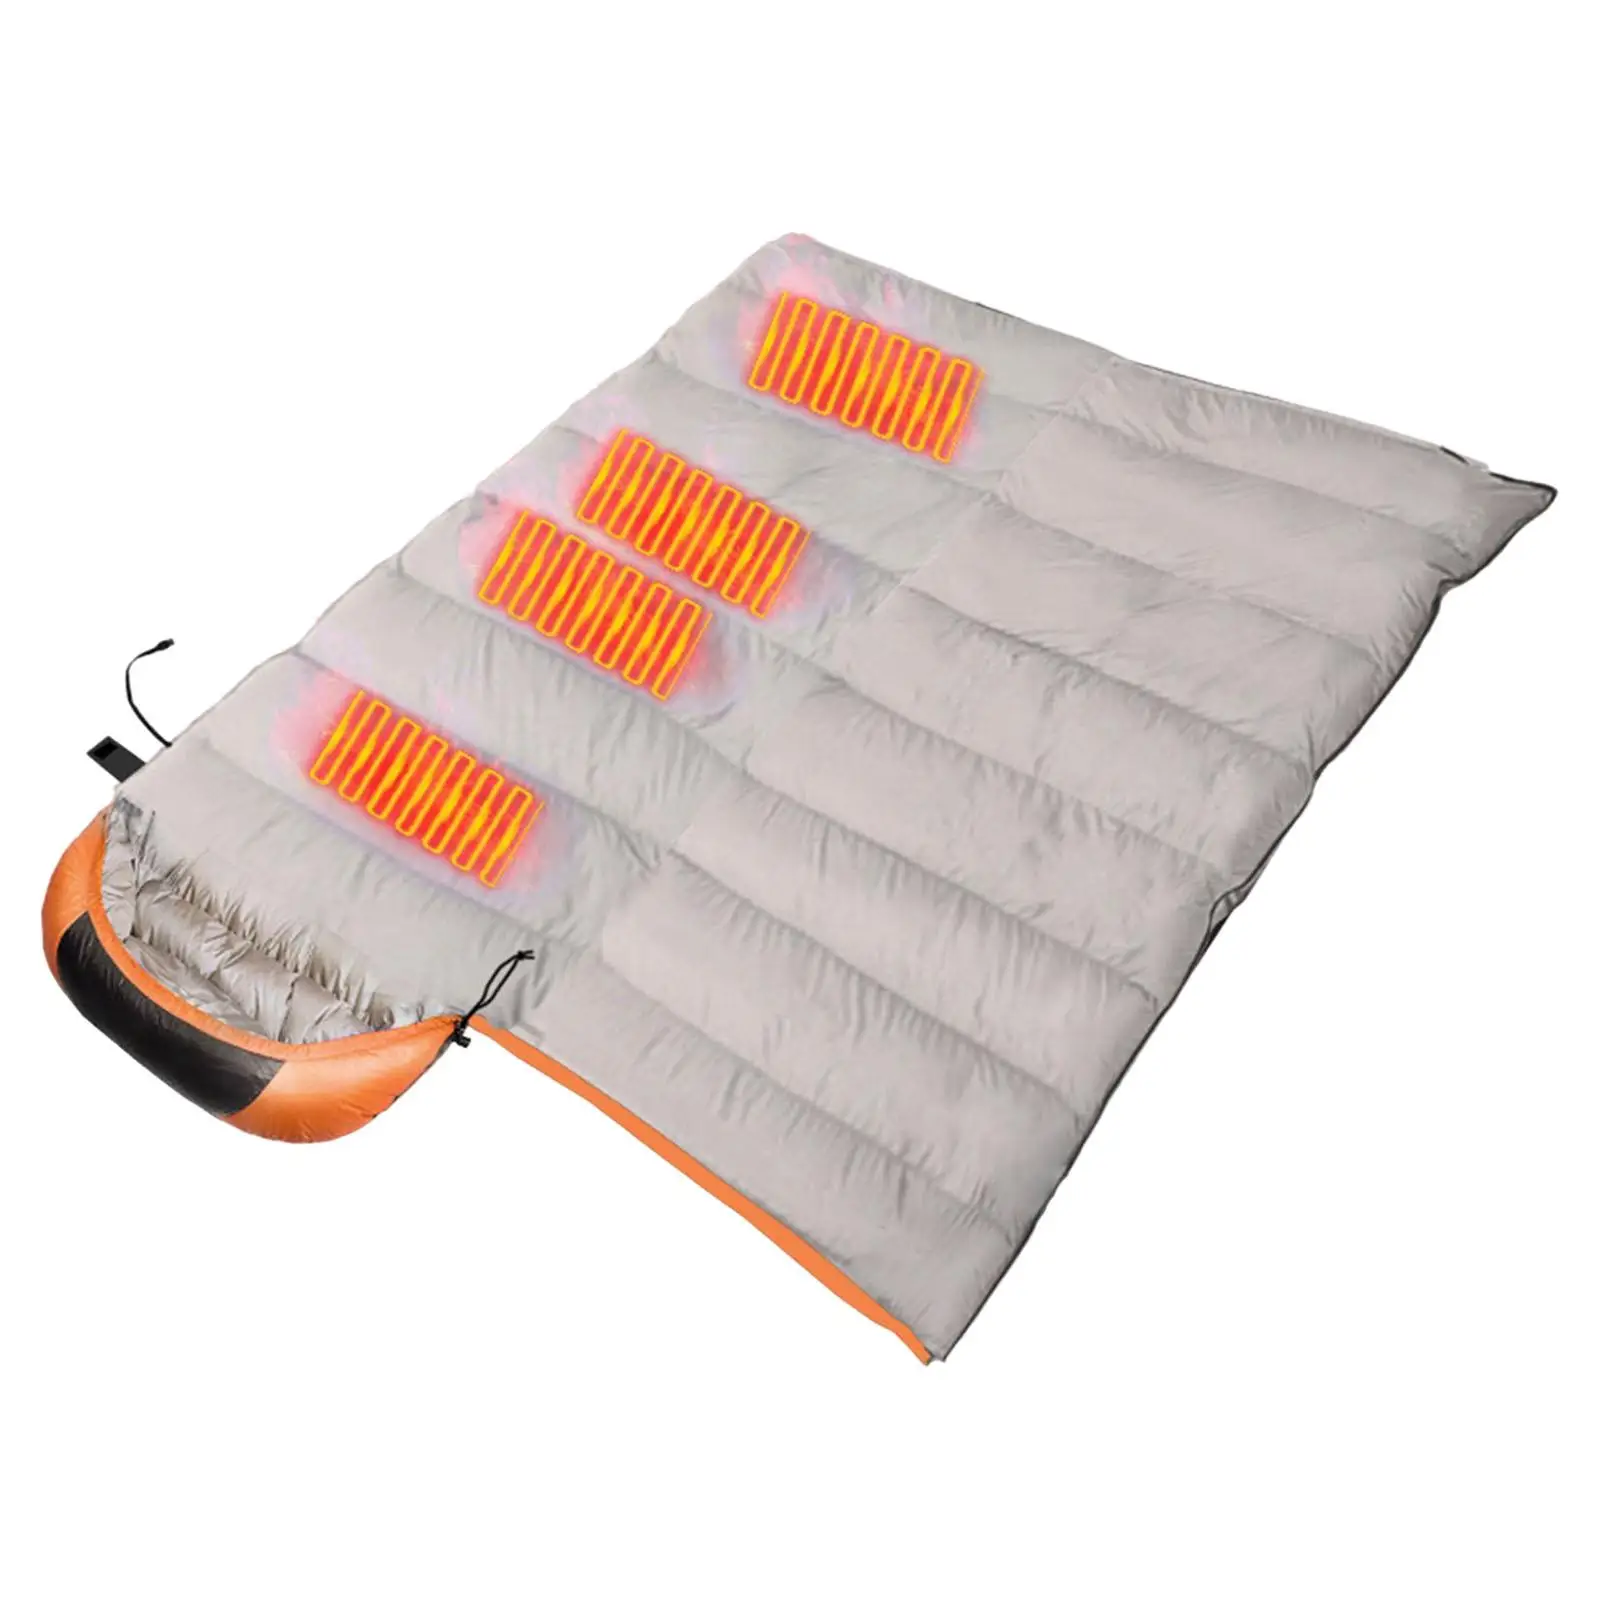 USB Heated Portable Sleepwear Waterproof Winter Sleepwear Soft Warm for